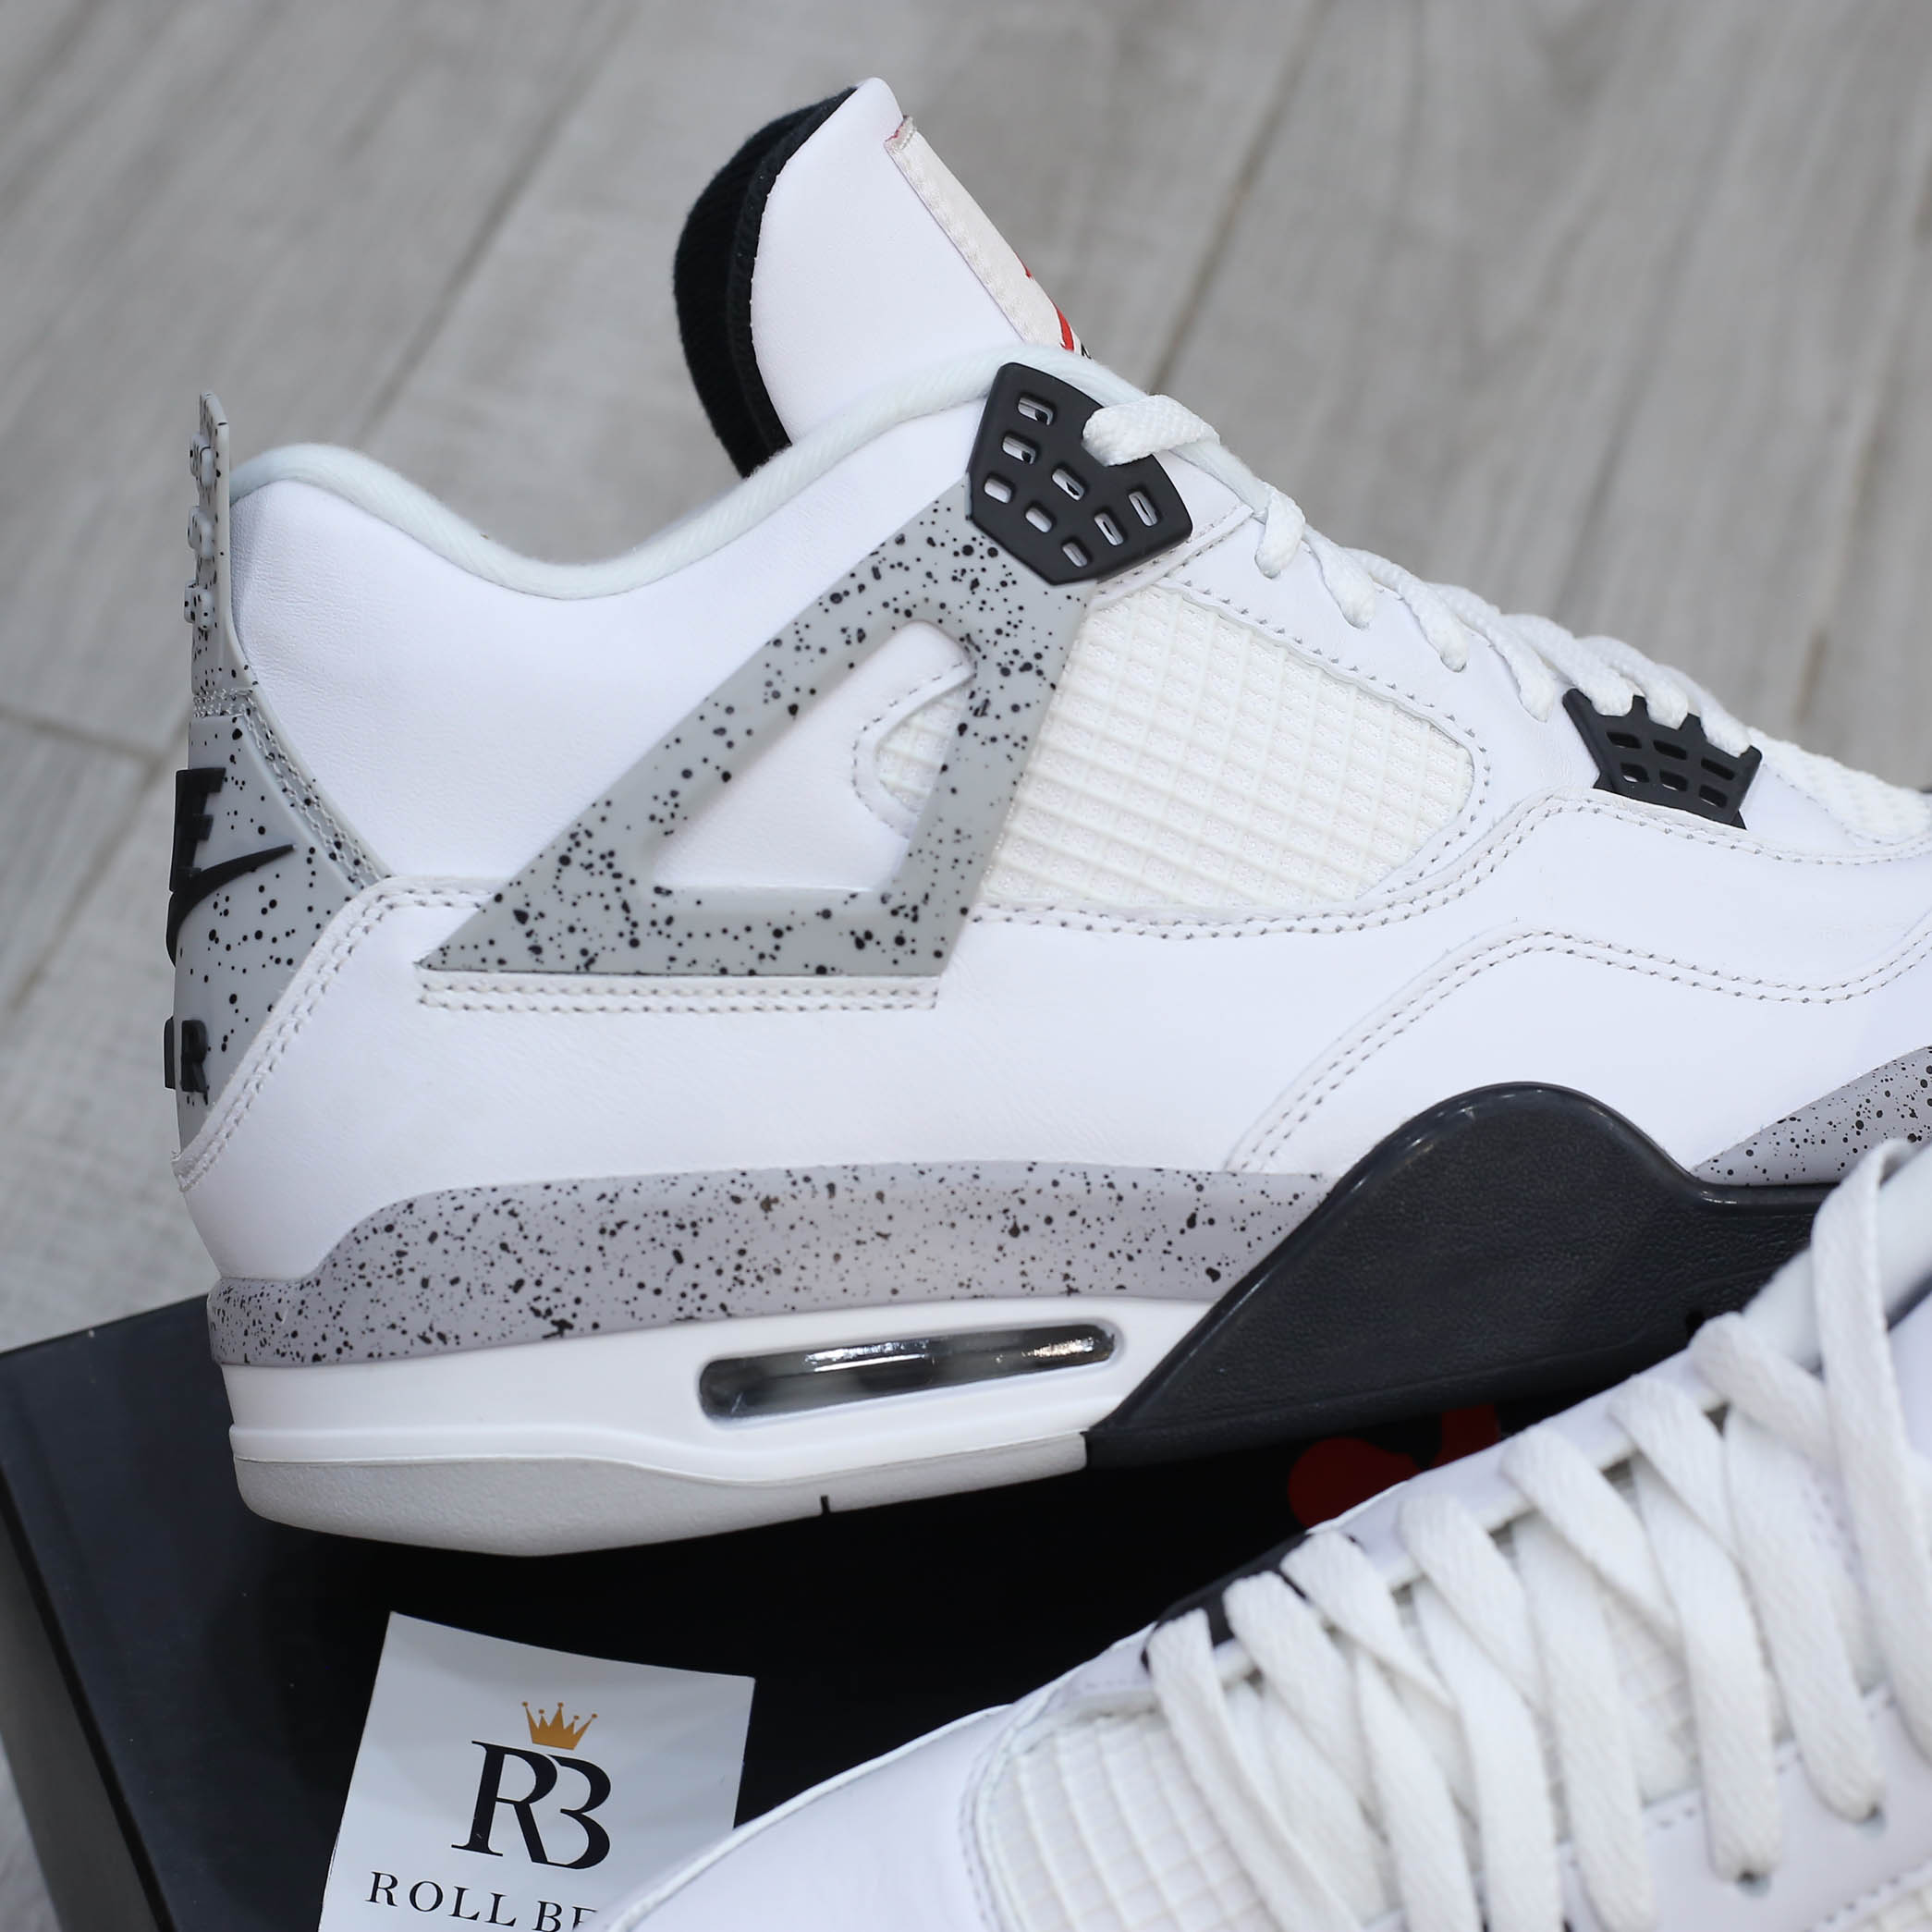 Nike Air Jordan 4 Retro OG White Cement